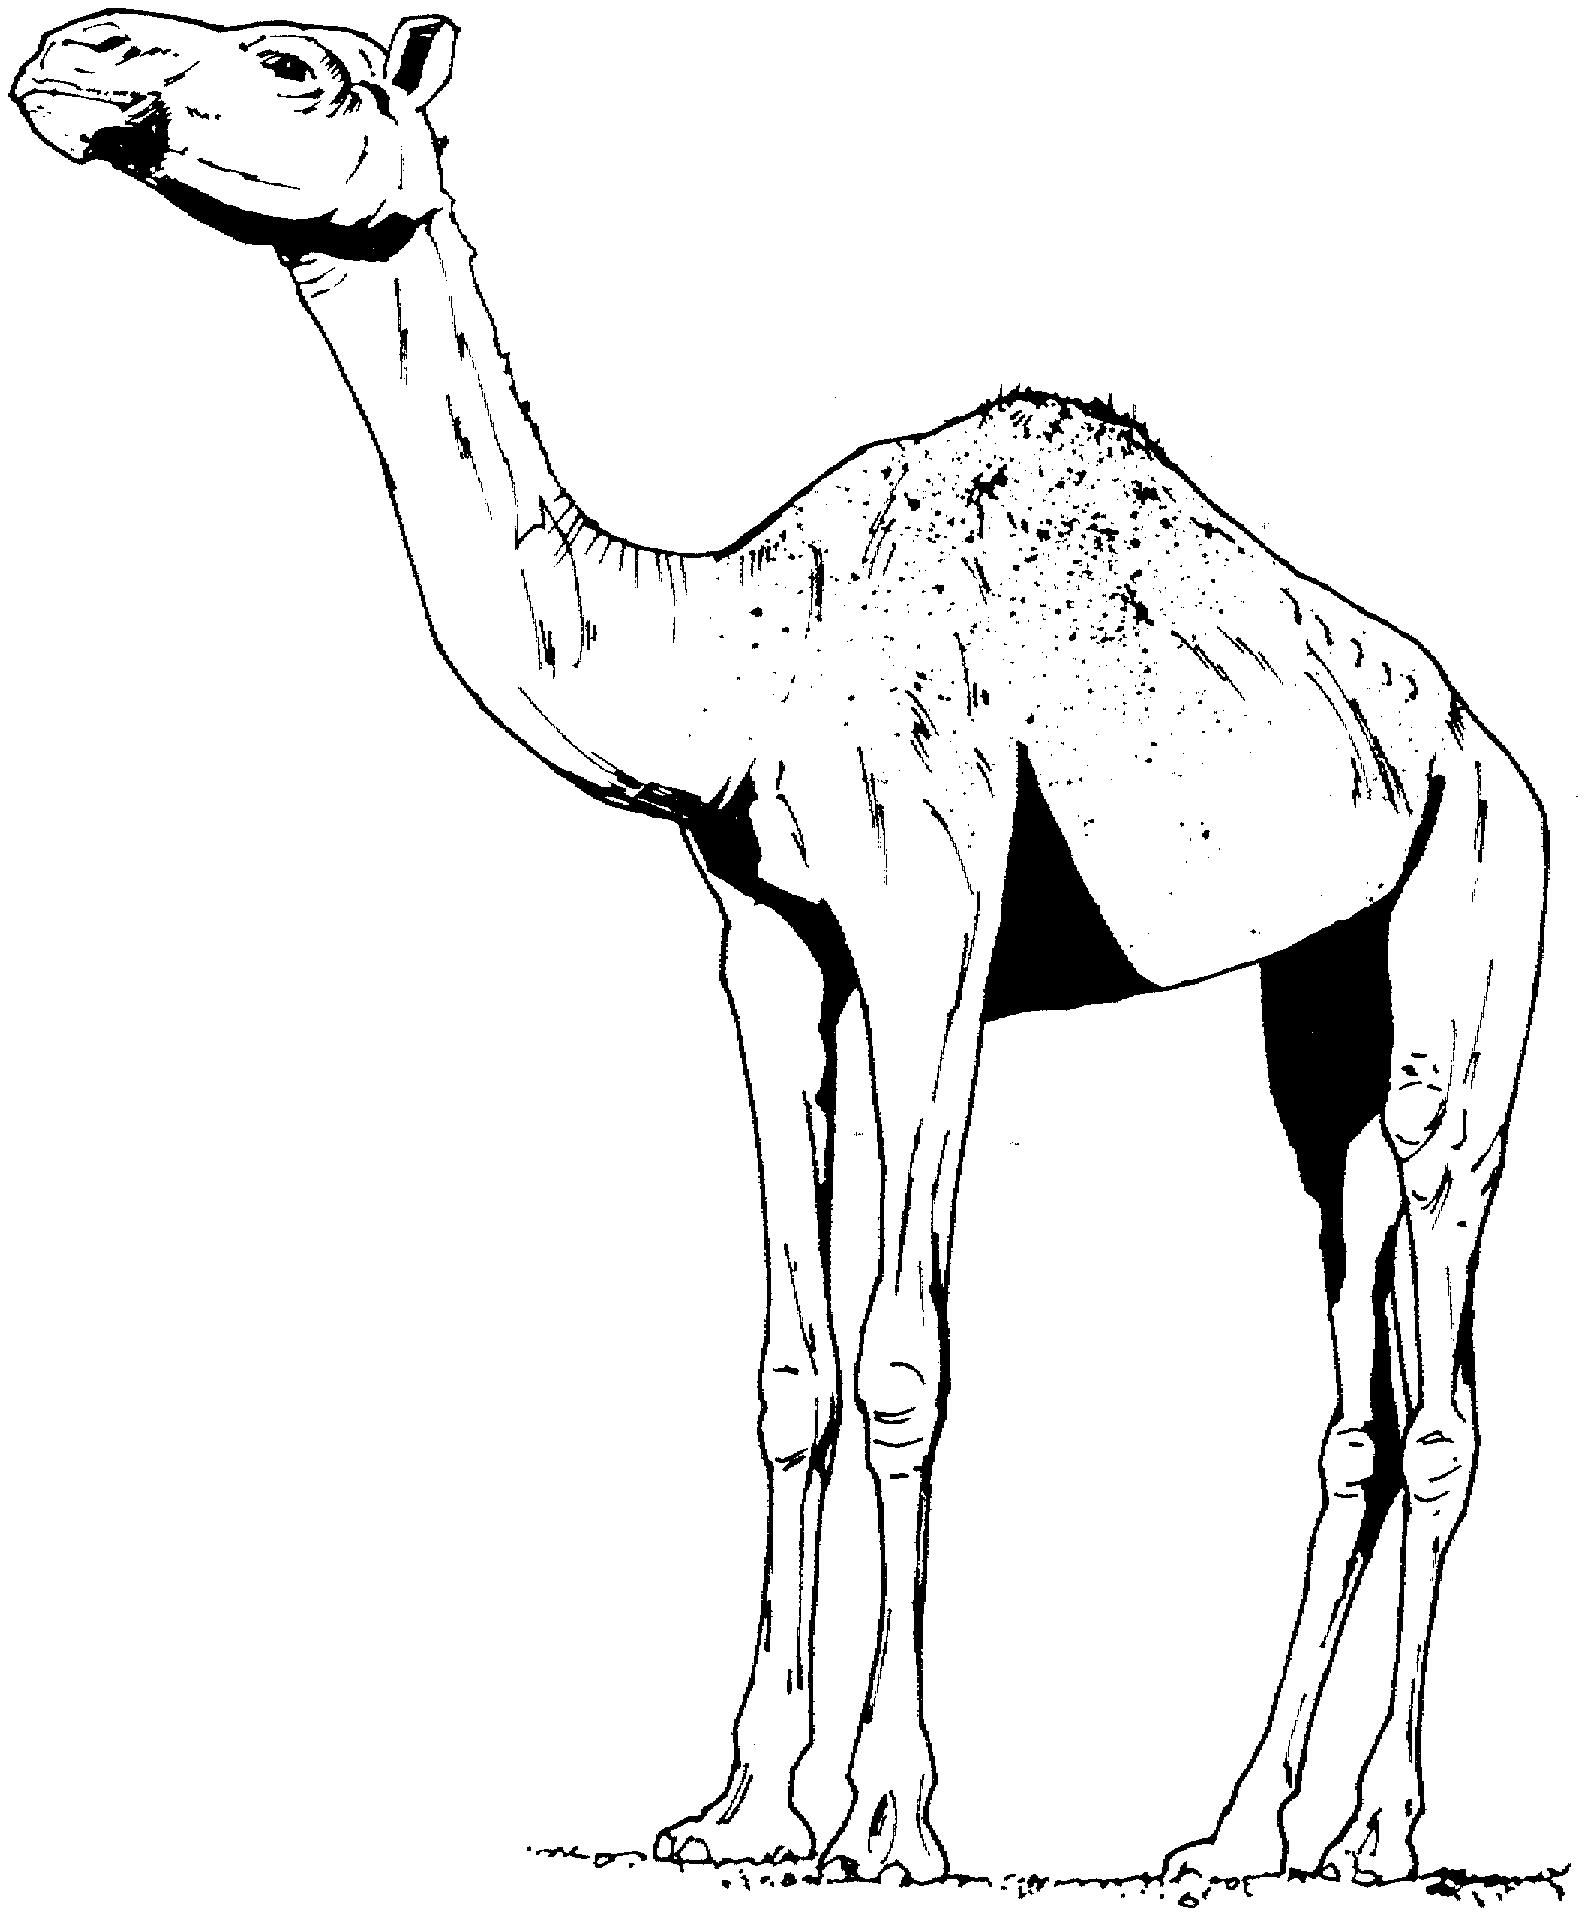 Alto cammello realistico disegno da stampare e colorare gratis